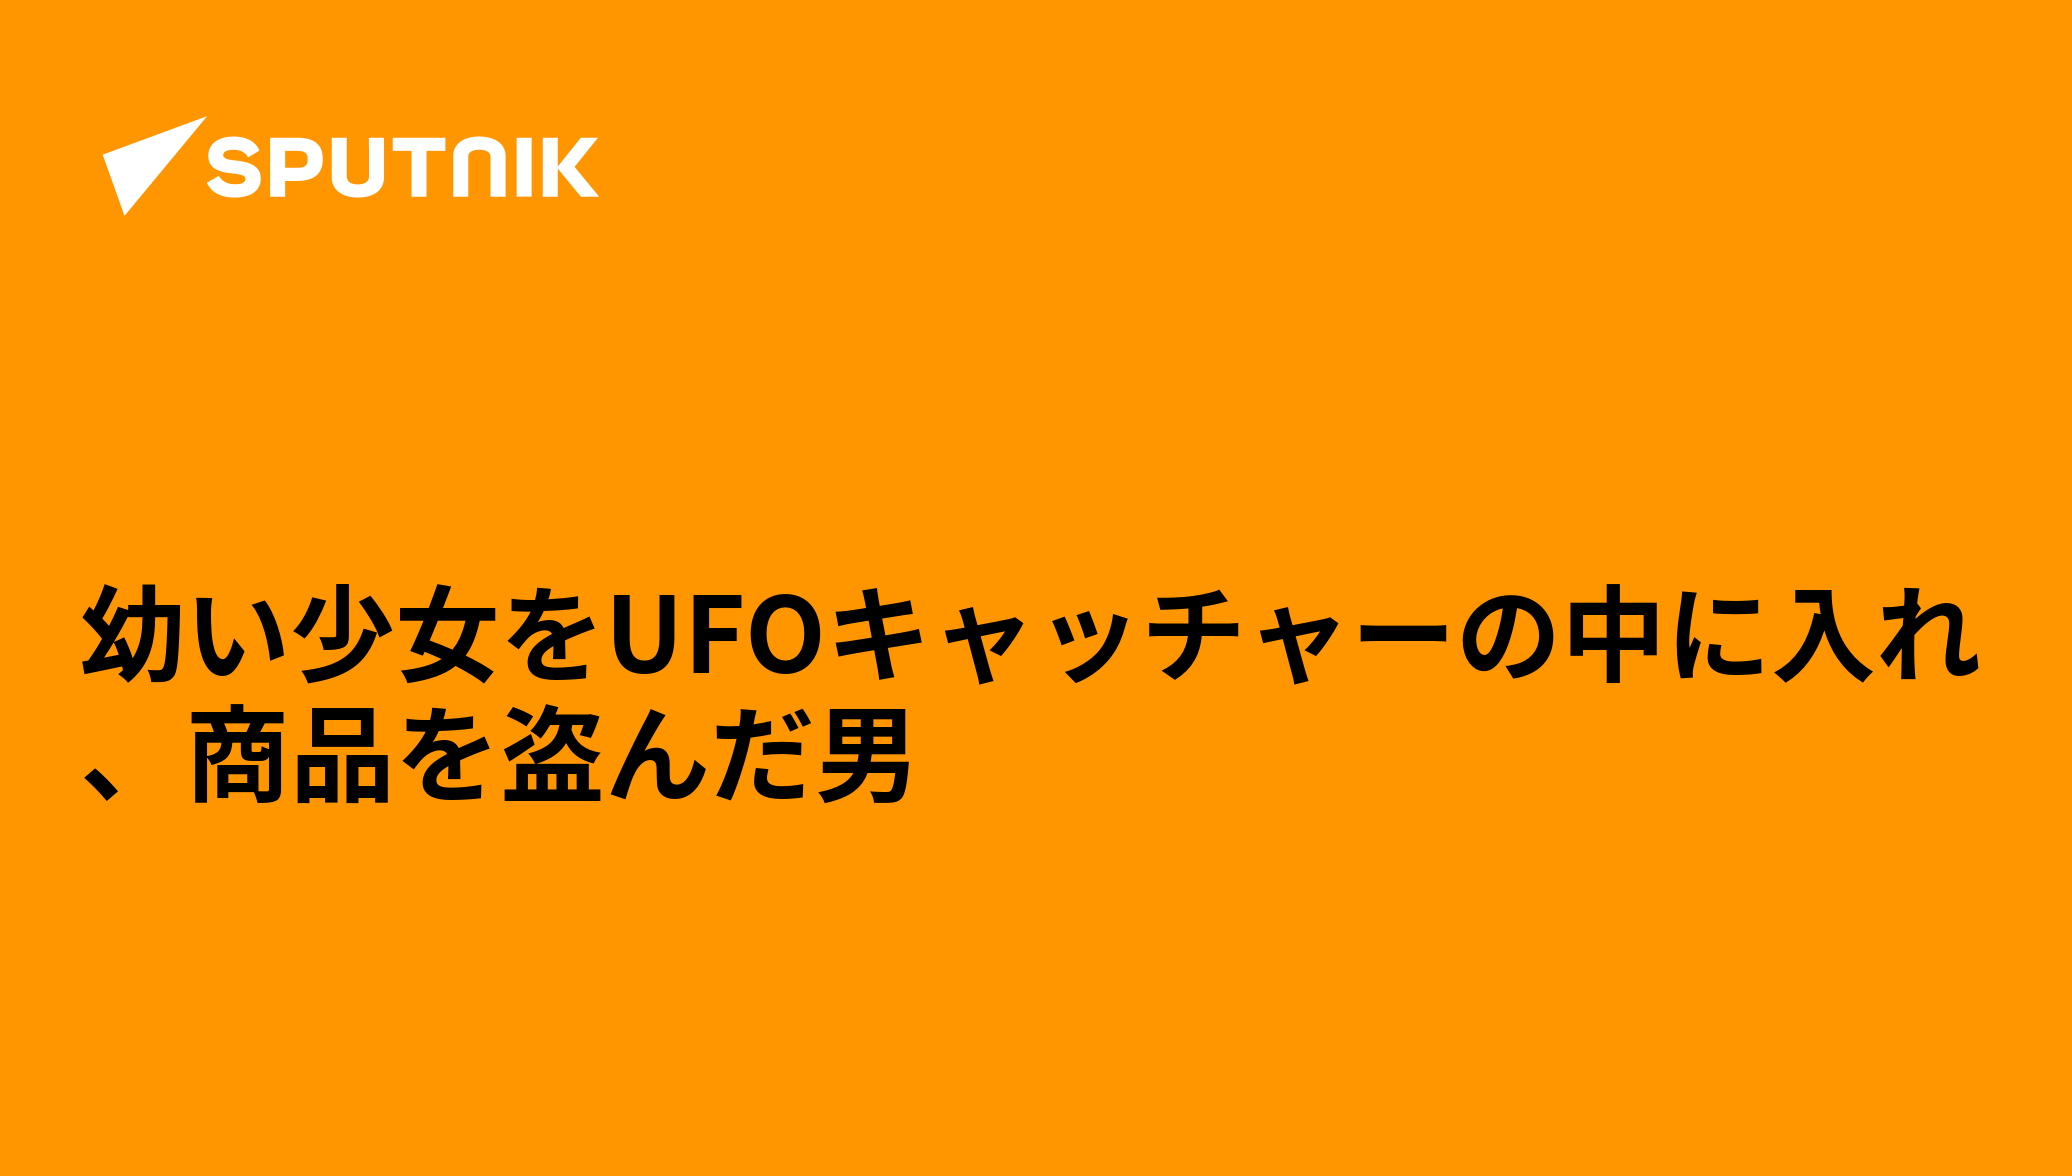 幼い少女をUFOキャッチャーの中に入れ、商品を盗んだ男 - 2018年9月20日, Sputnik 日本